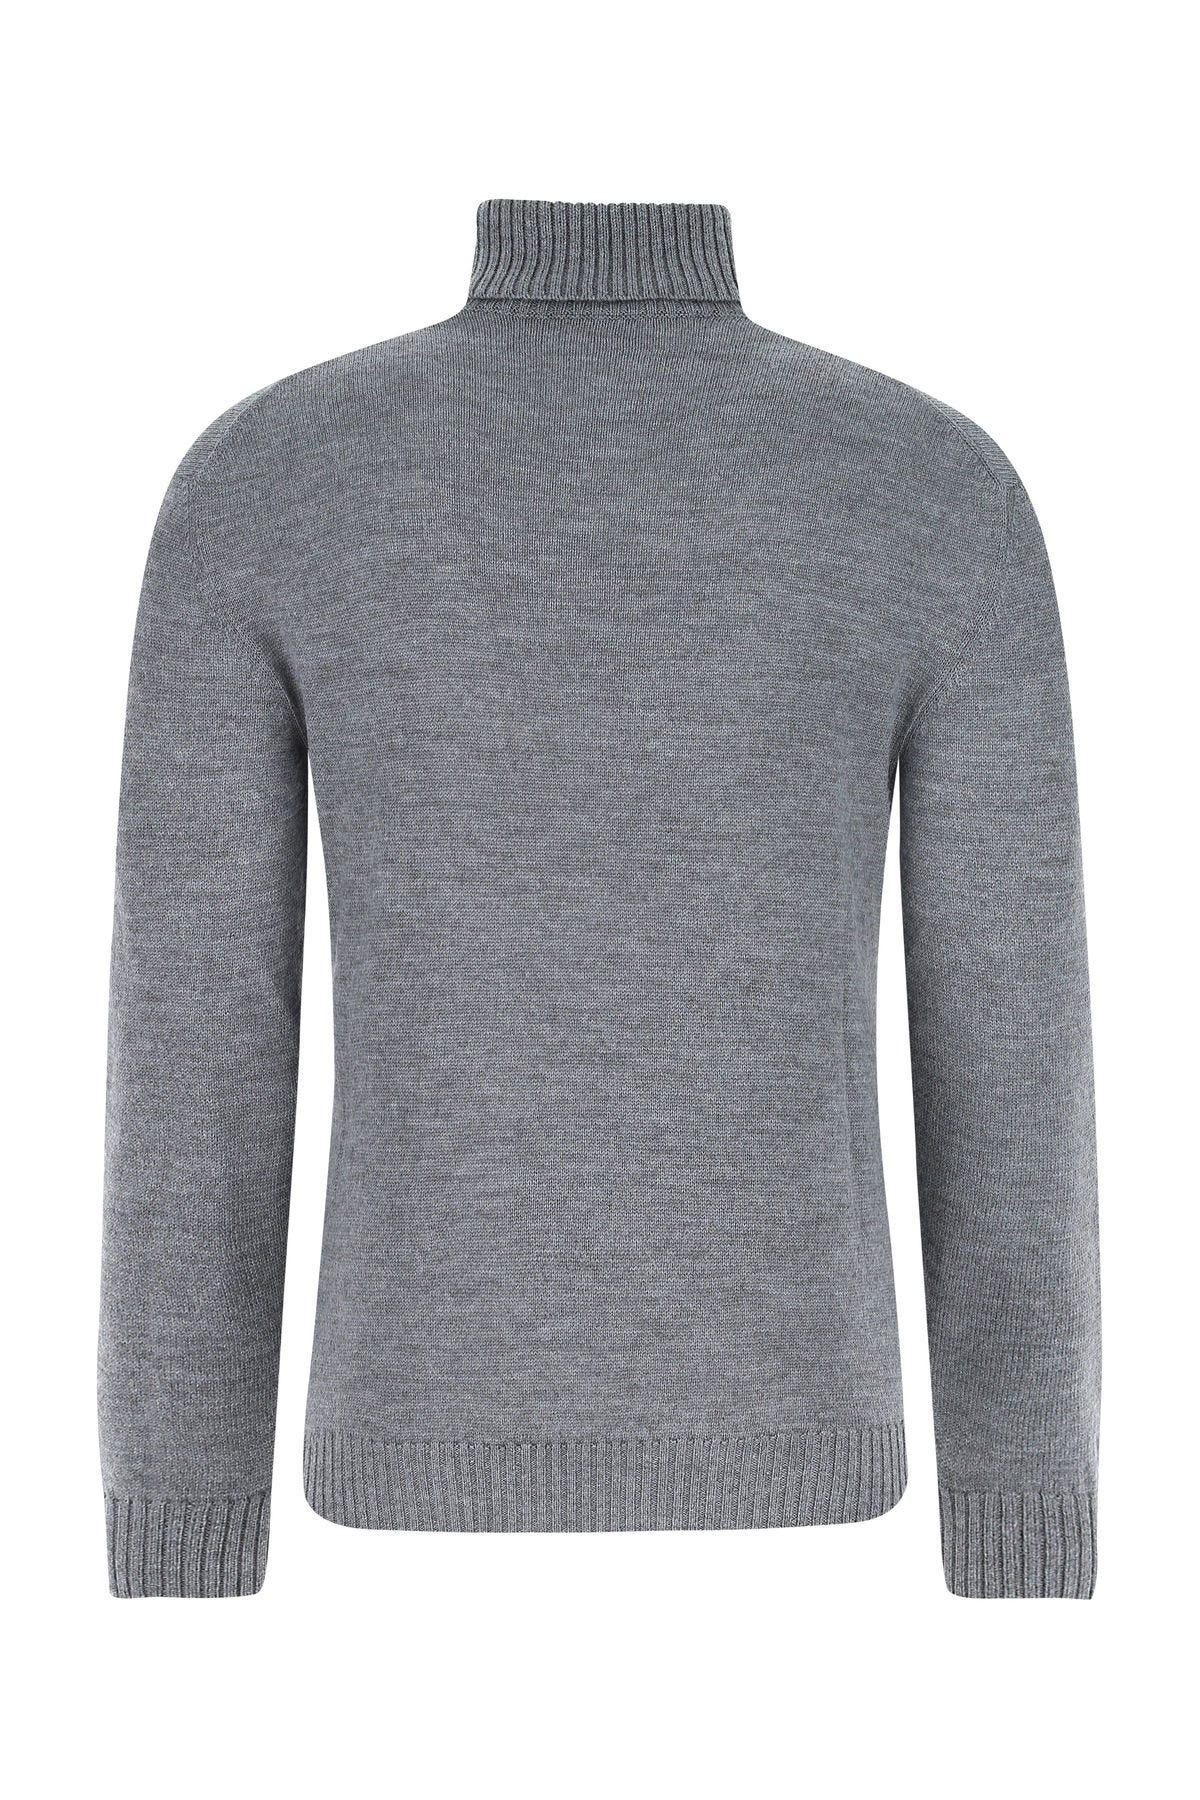 Shop Jil Sander Grey Wool Sweater